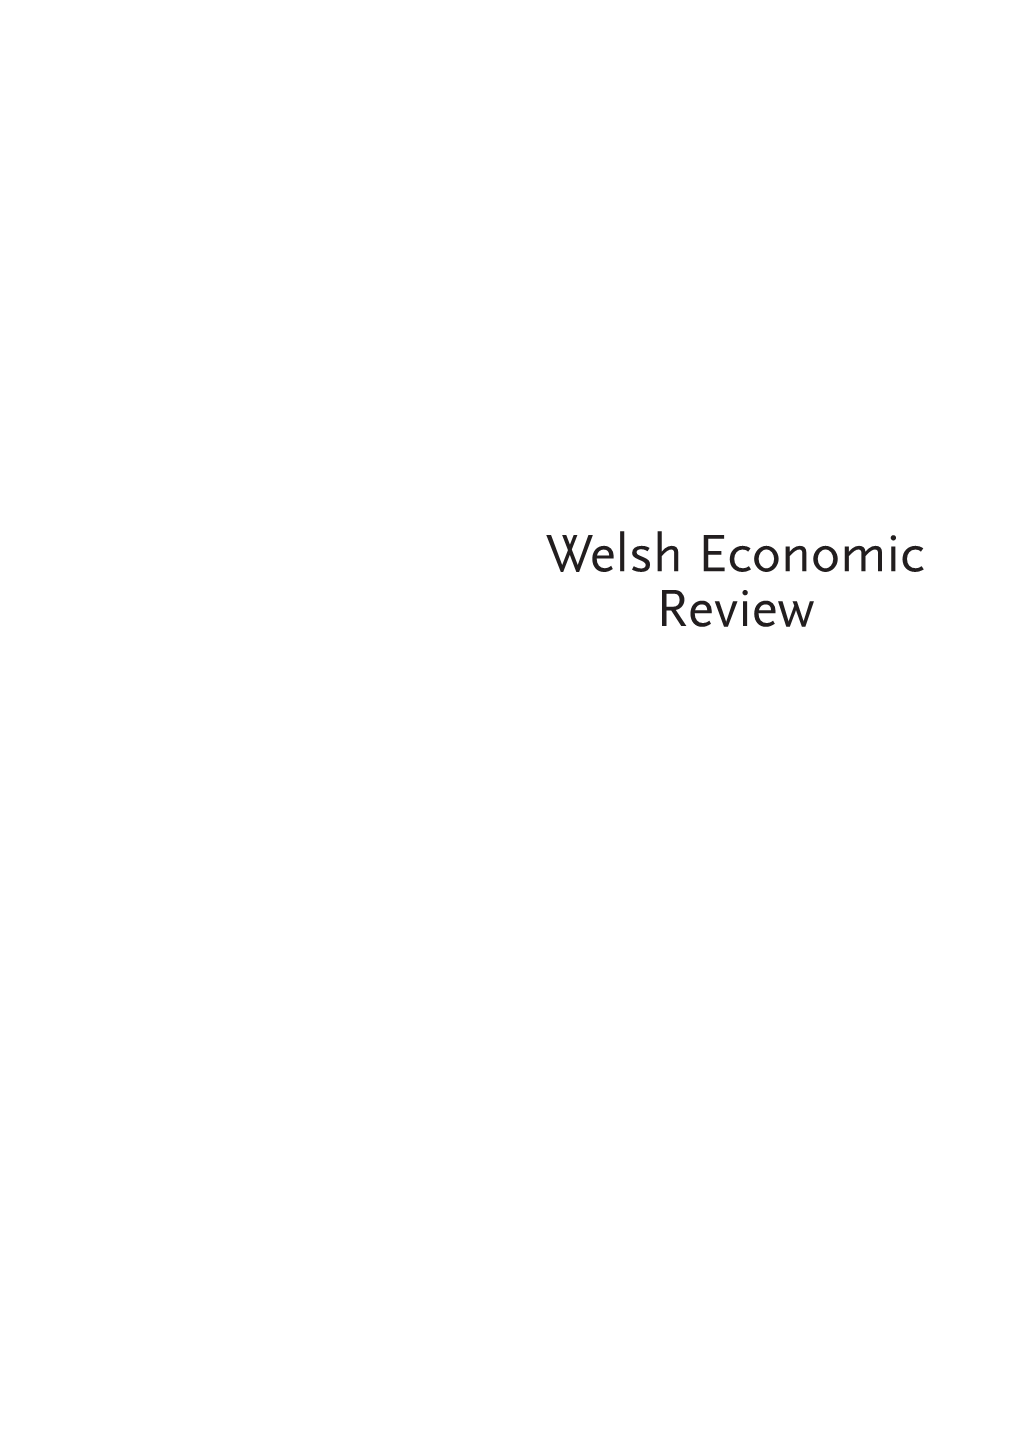 Welsh Economic Review Welsh Economic Review